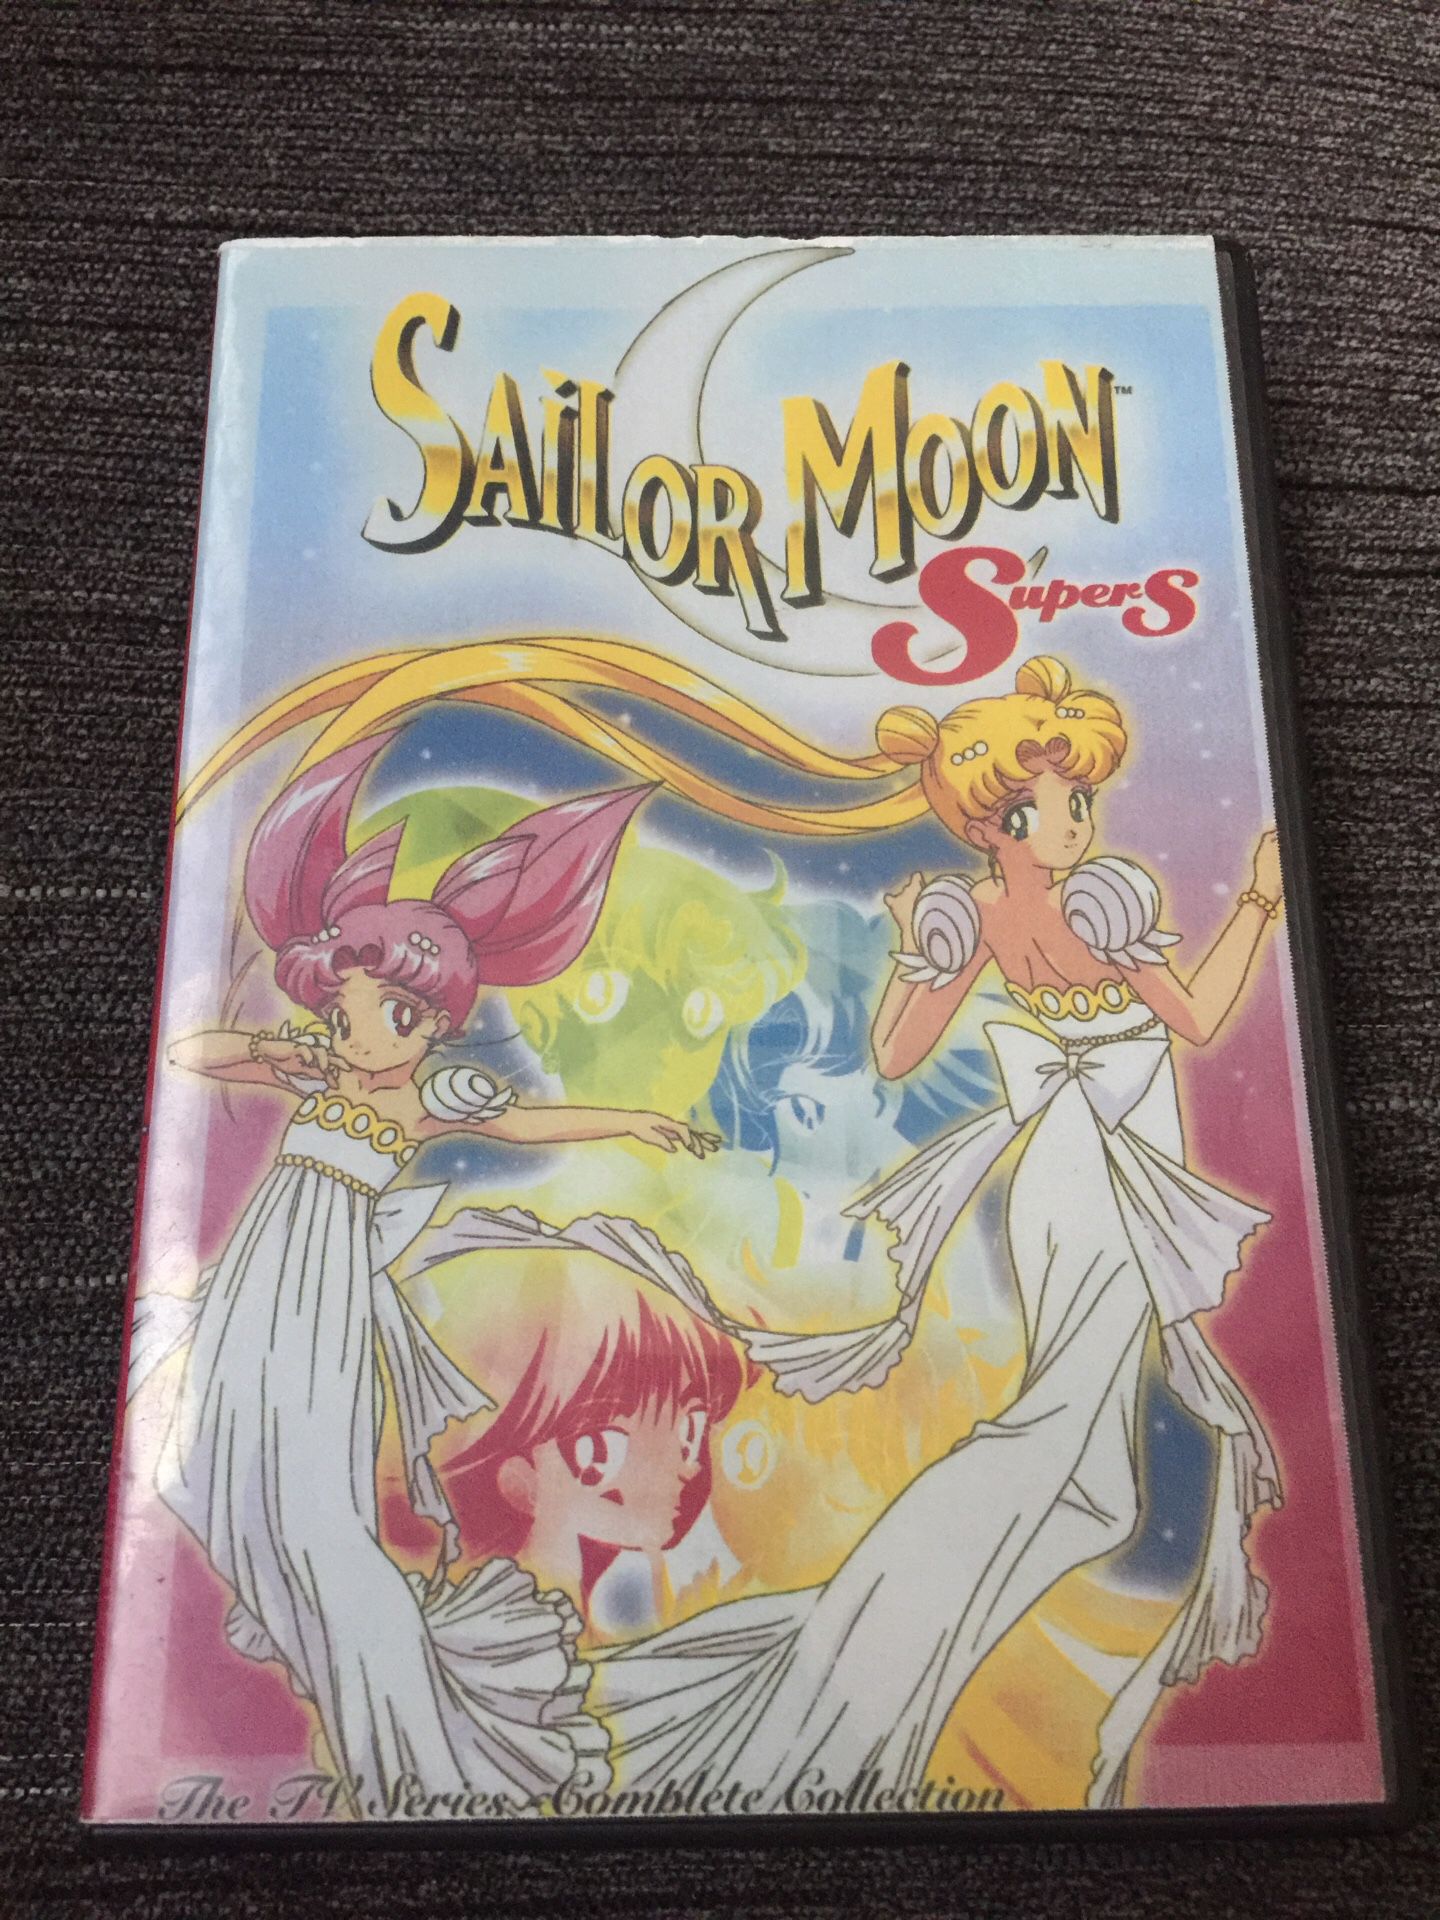 Sailor moon super s